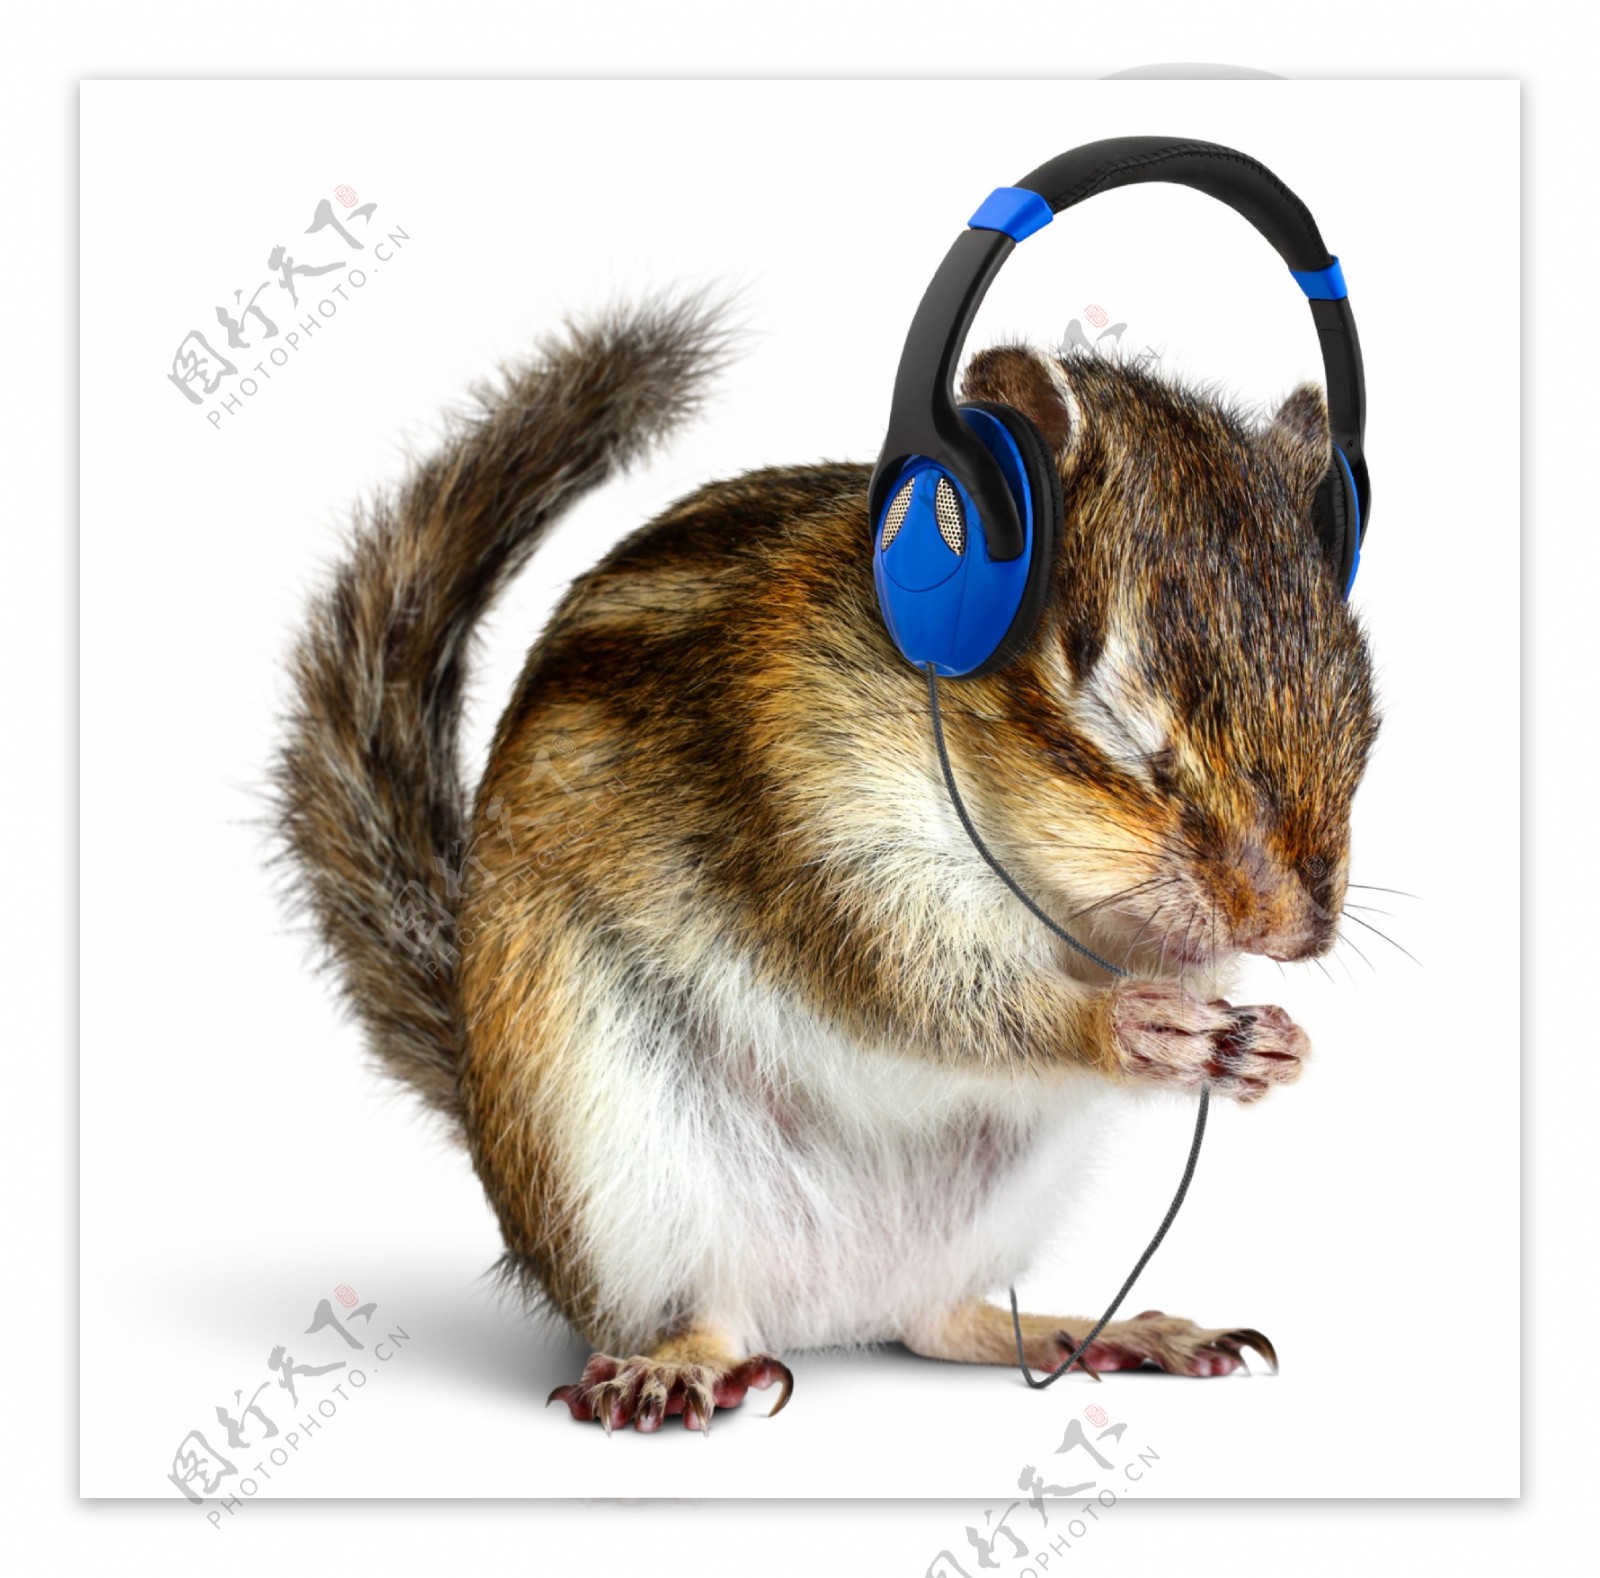 戴耳机听歌的老鼠